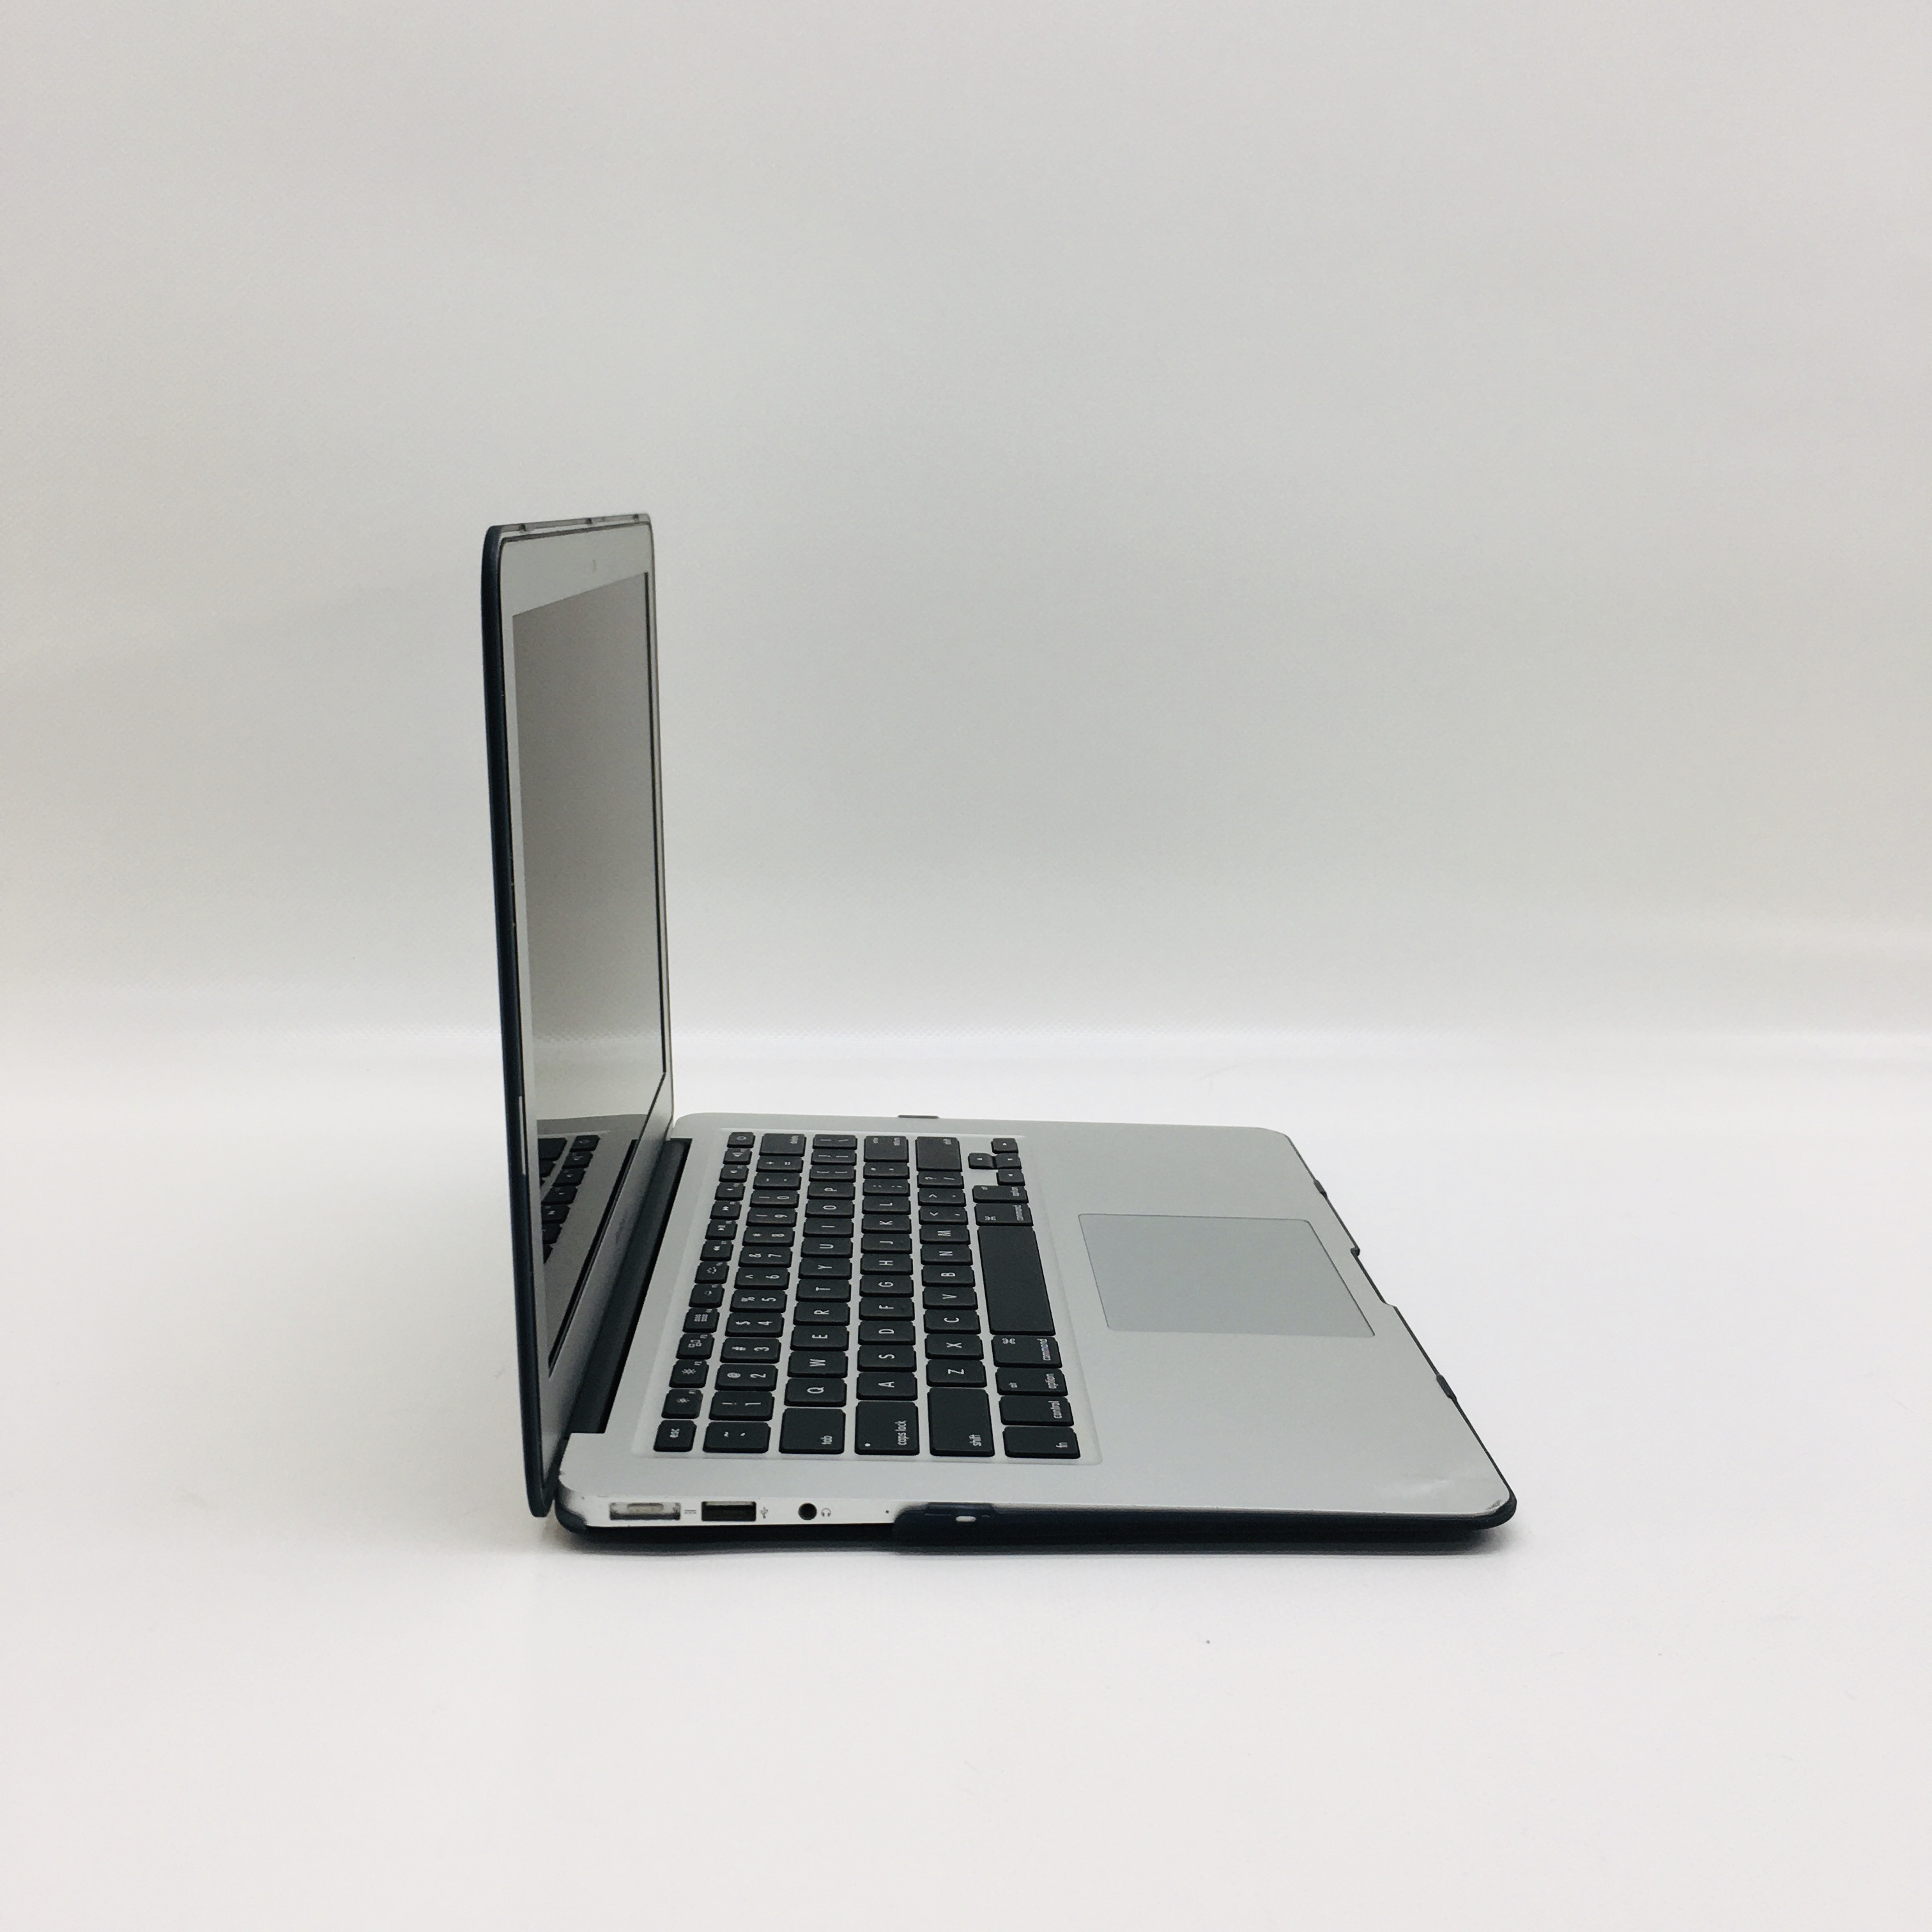 MacBook Air 13" Mid 2017 (Intel Core i5 1.8 GHz 8 GB RAM 128 GB SSD), Intel Core i5 1.8 GHz, 8 GB RAM, 128 GB SSD, image 3